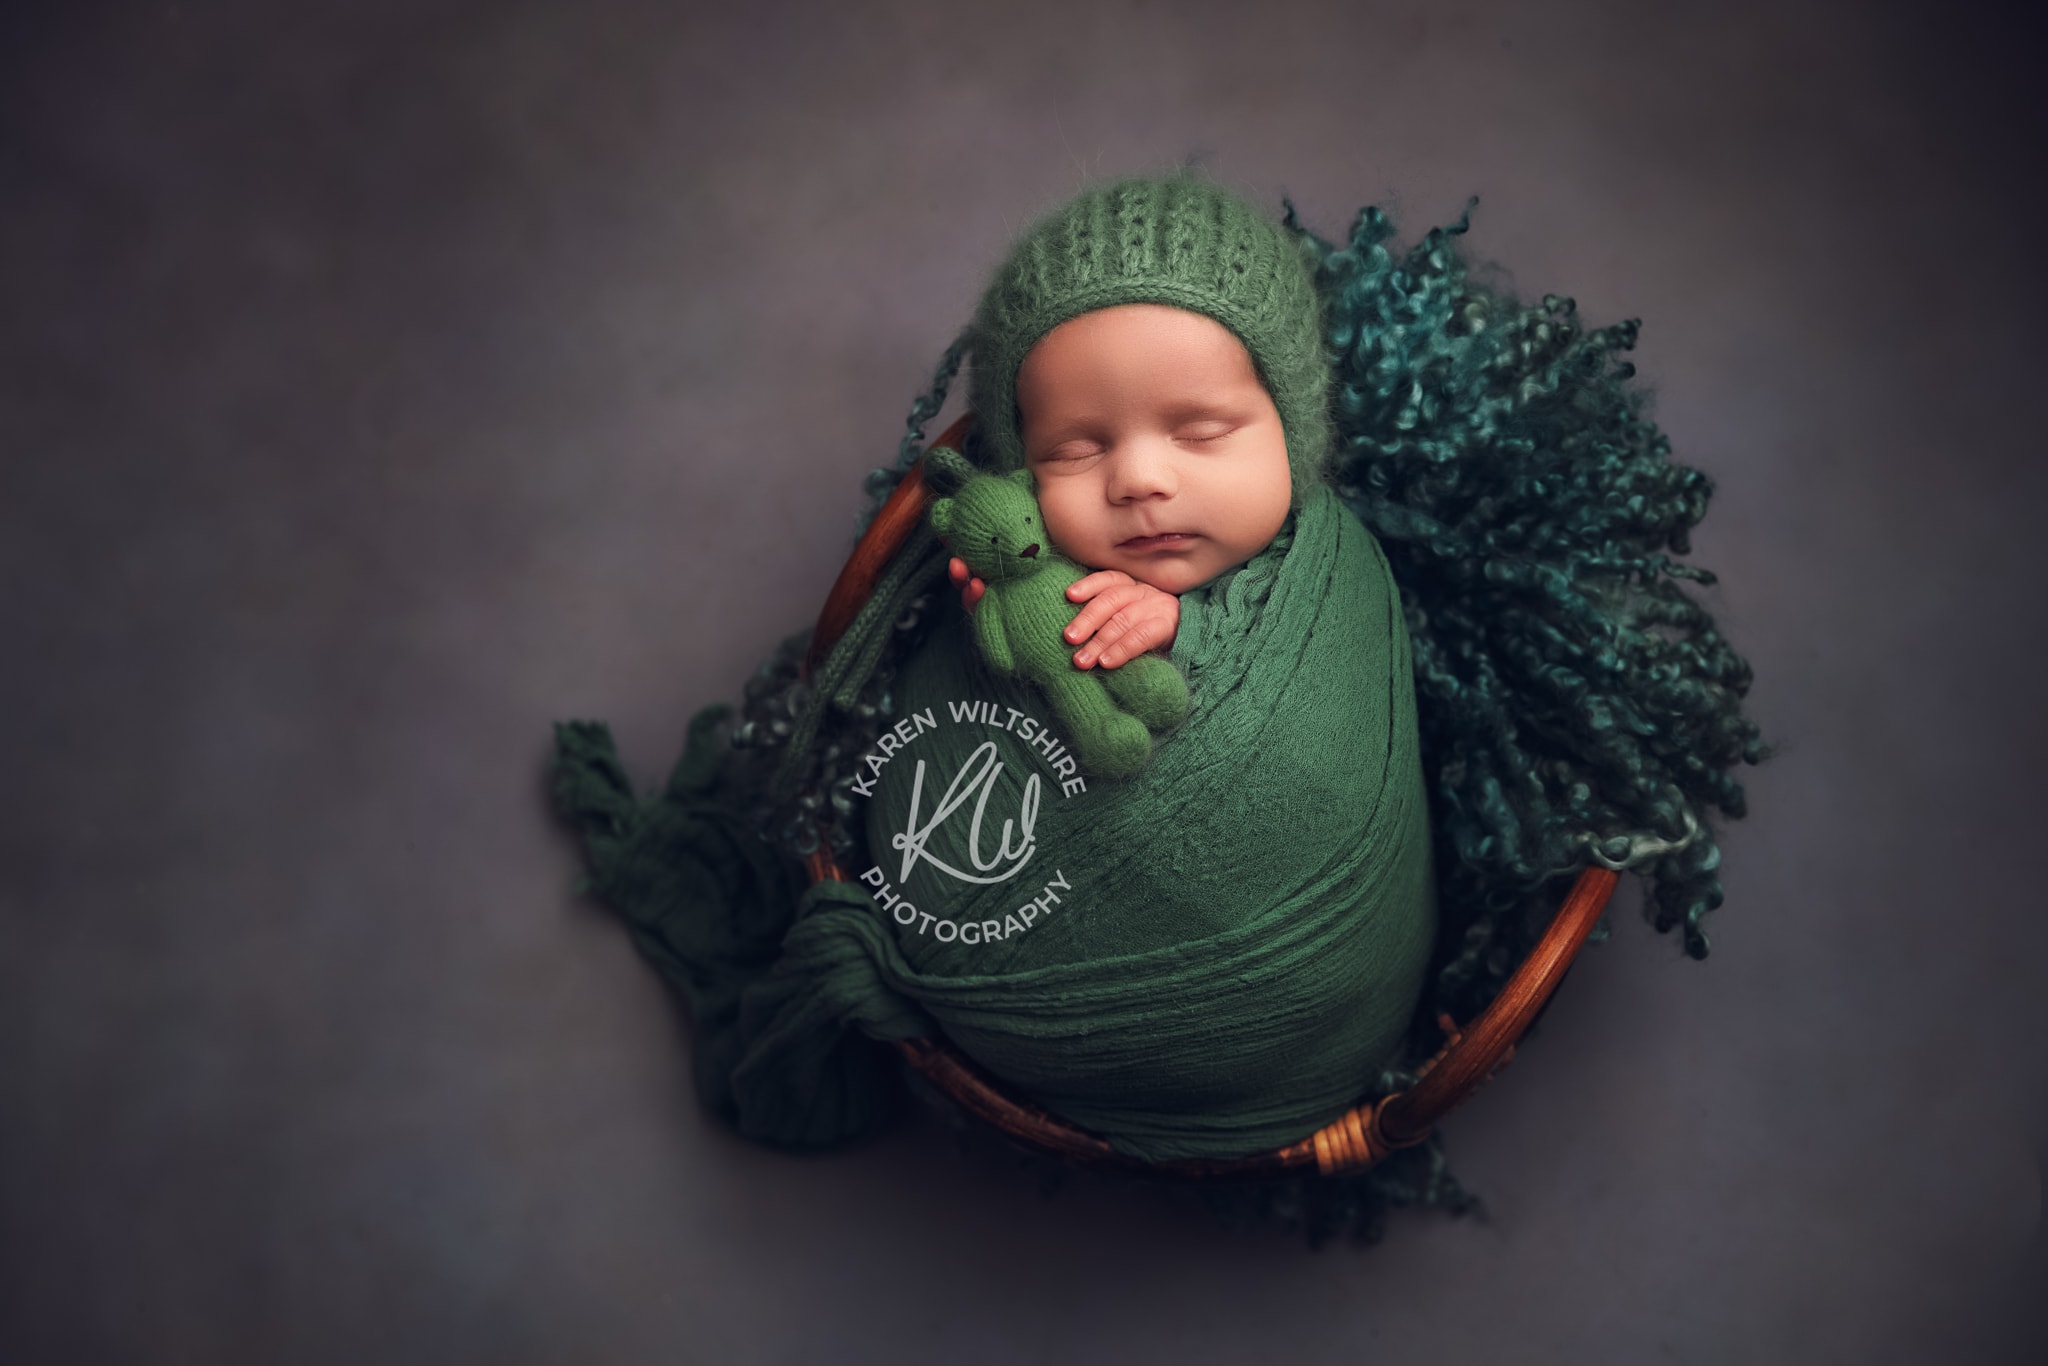 Baby boy cuddling green teddy